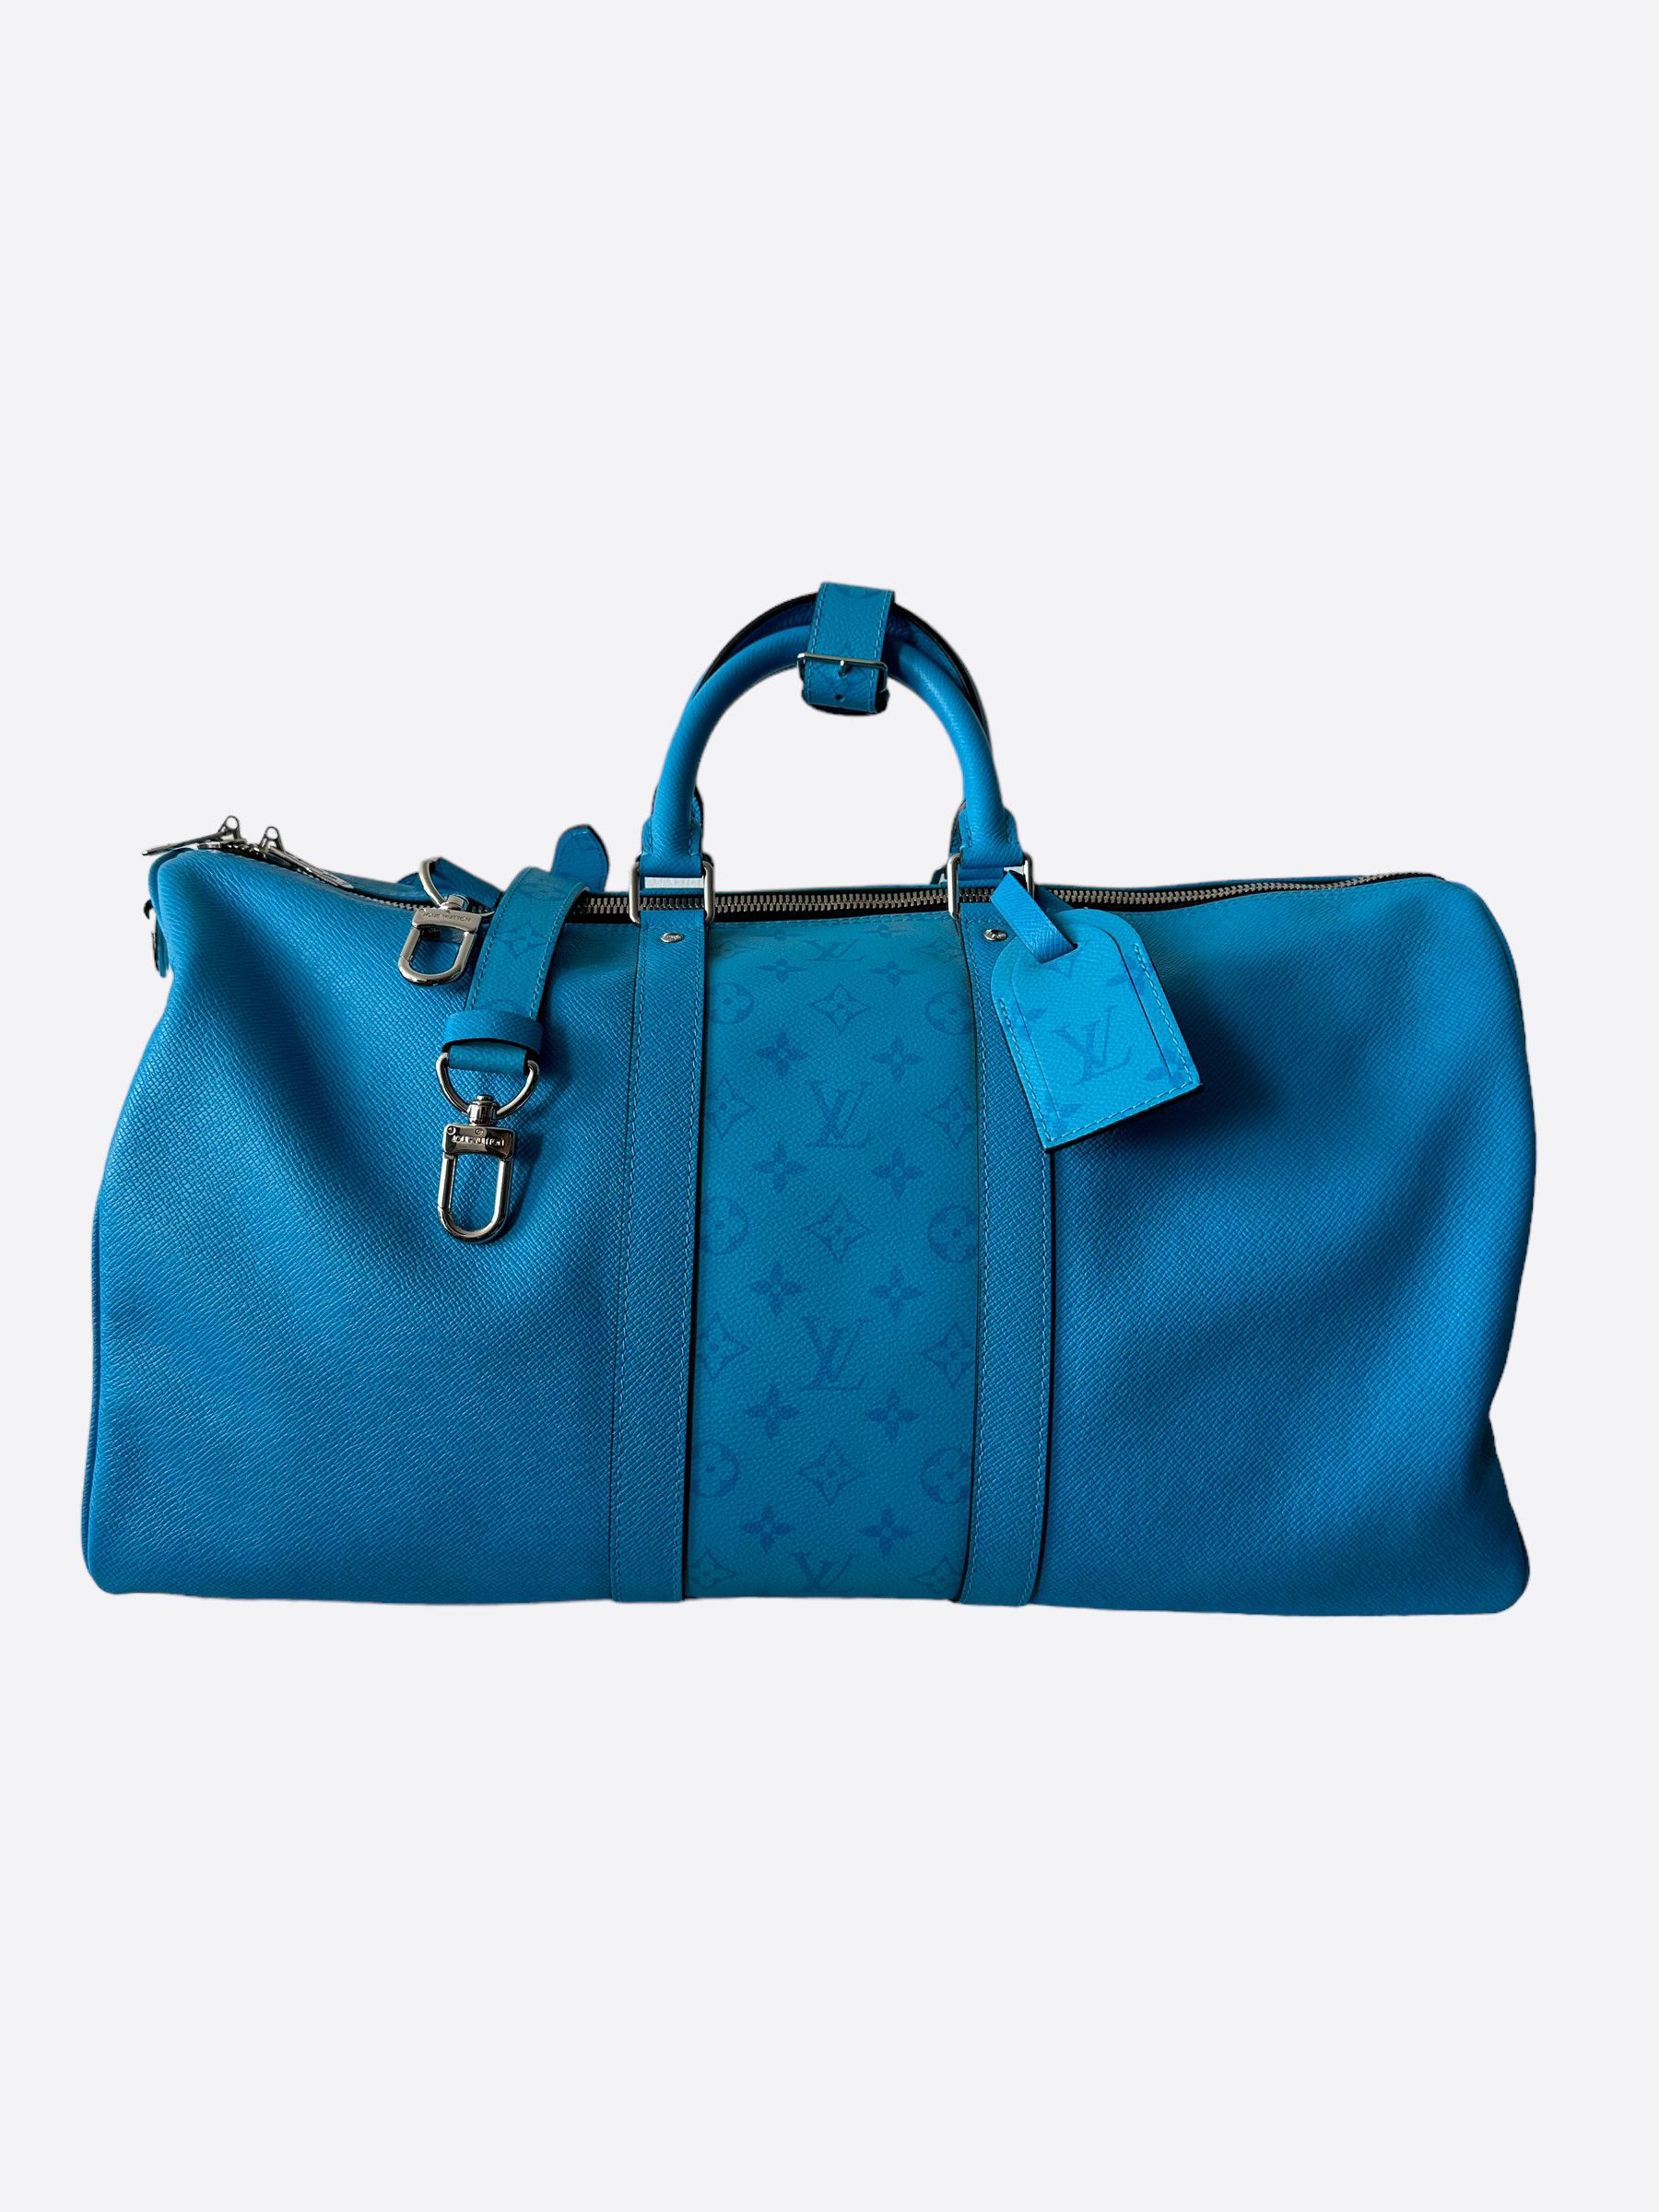 Louis Vuitton Keepall Bandoulière 50 Blue autres Toiles Monogram